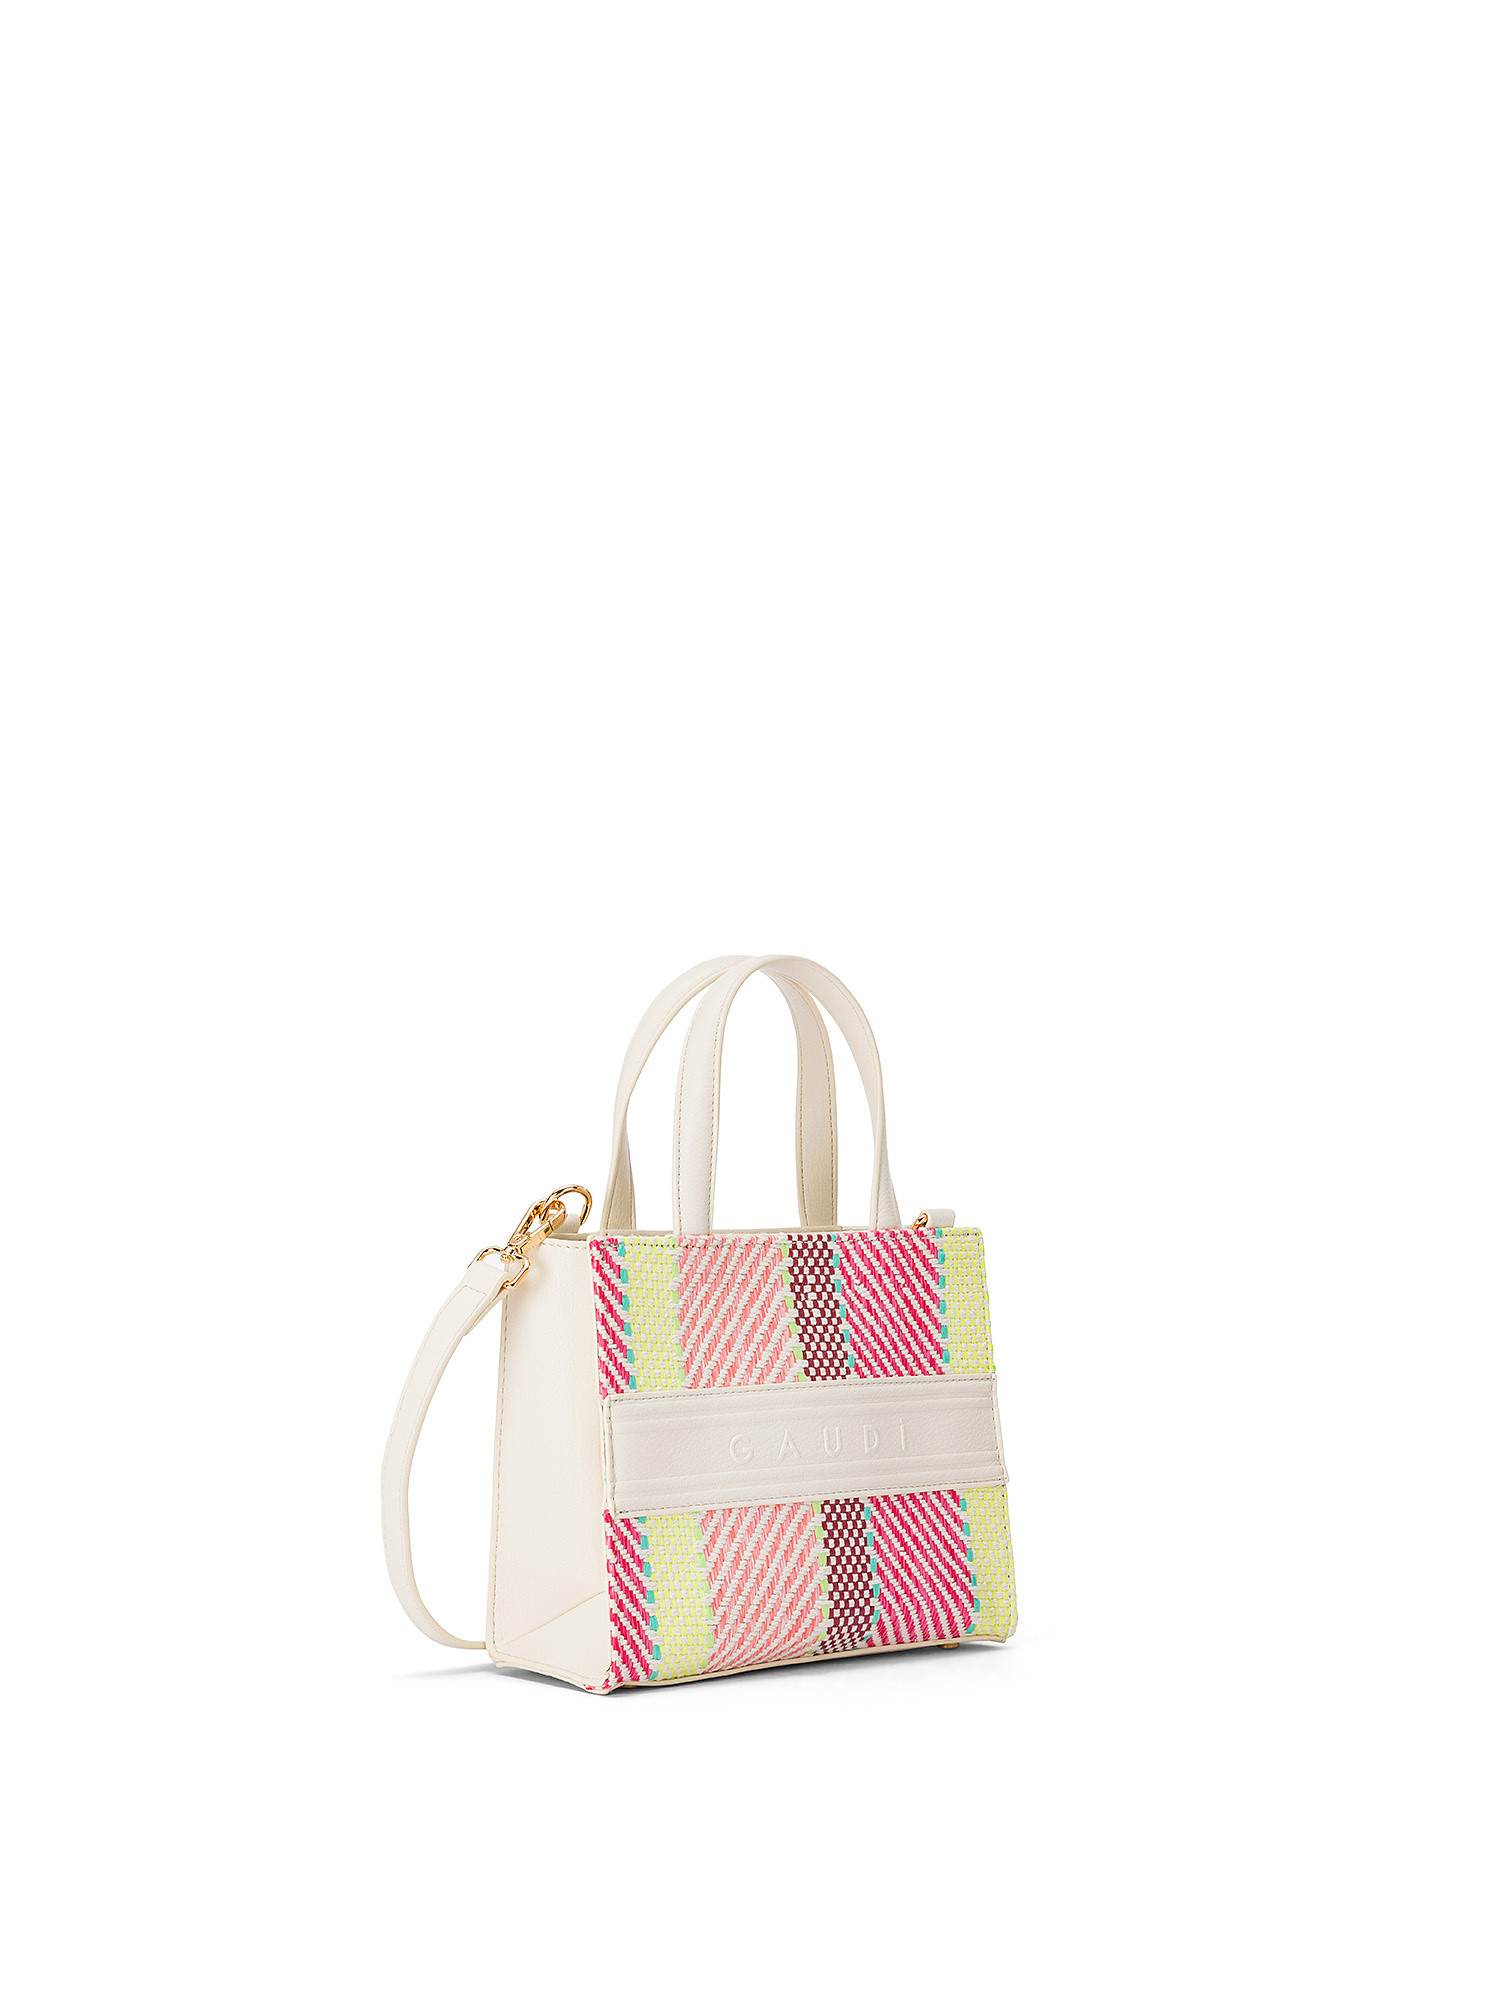 Gaudì - Raffia and imitation leather mini shopping bag, White, large image number 1